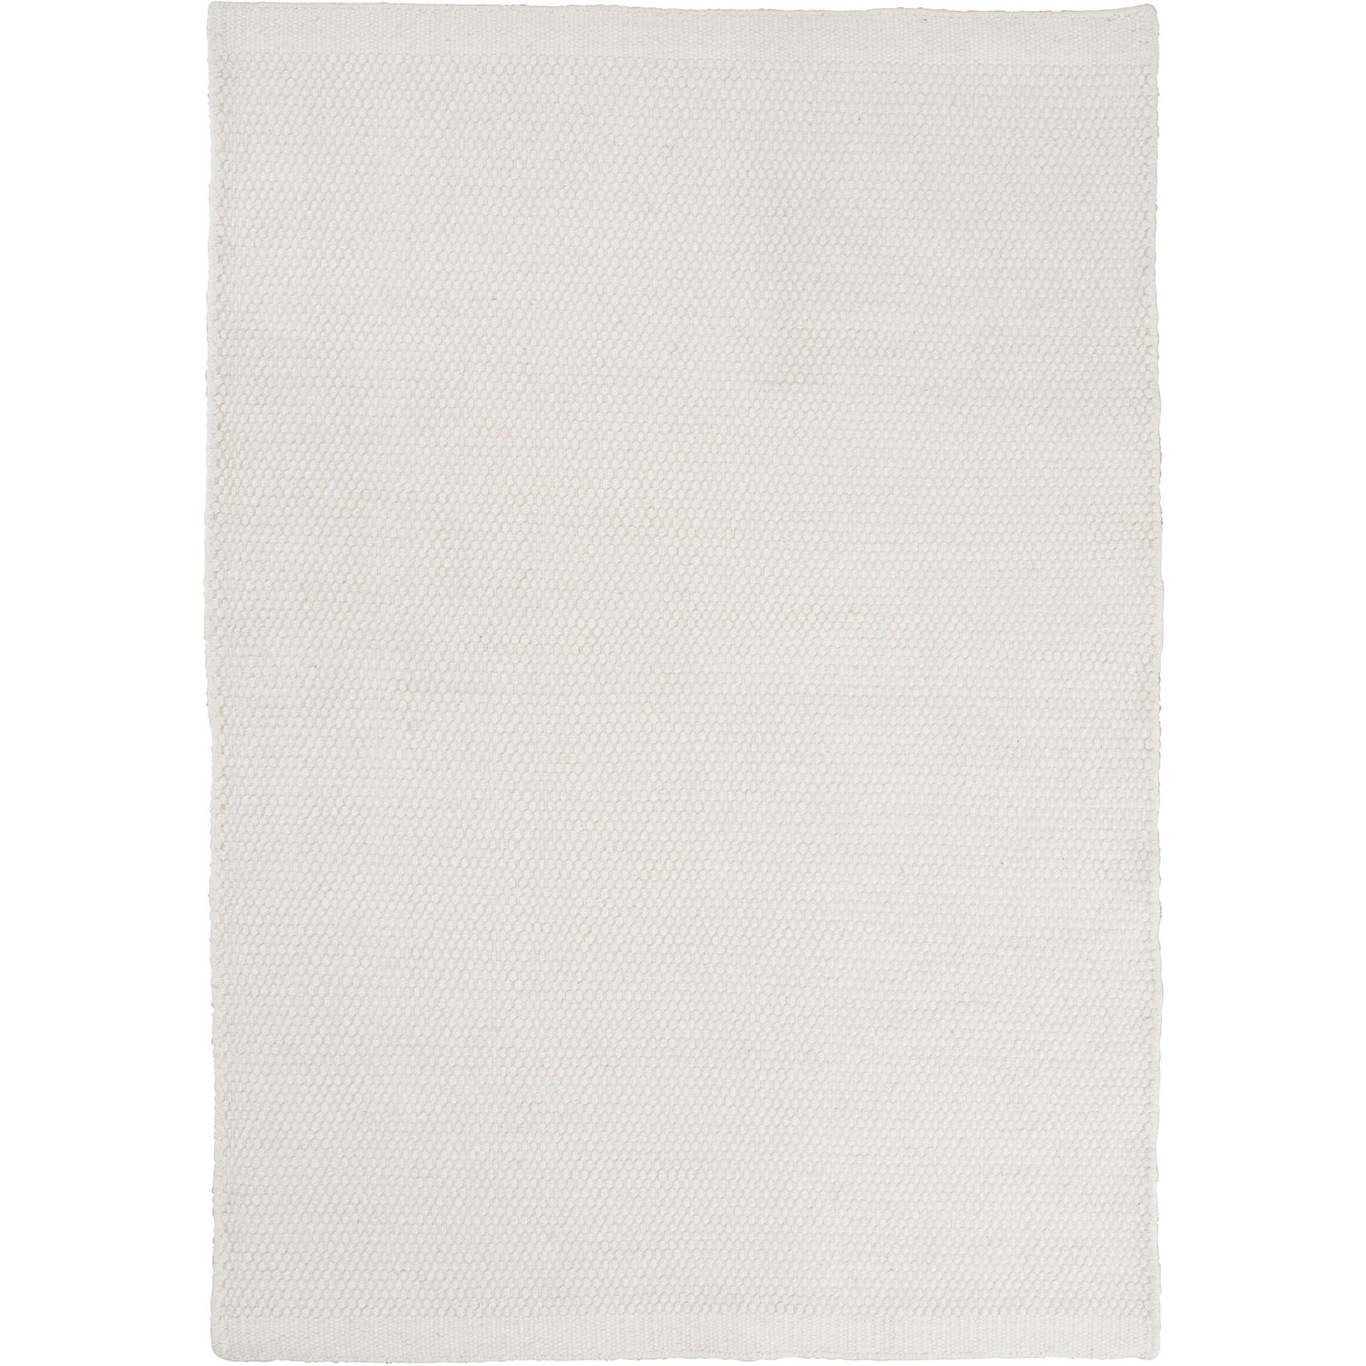 Asko Teppich Weiß, 170x240 cm